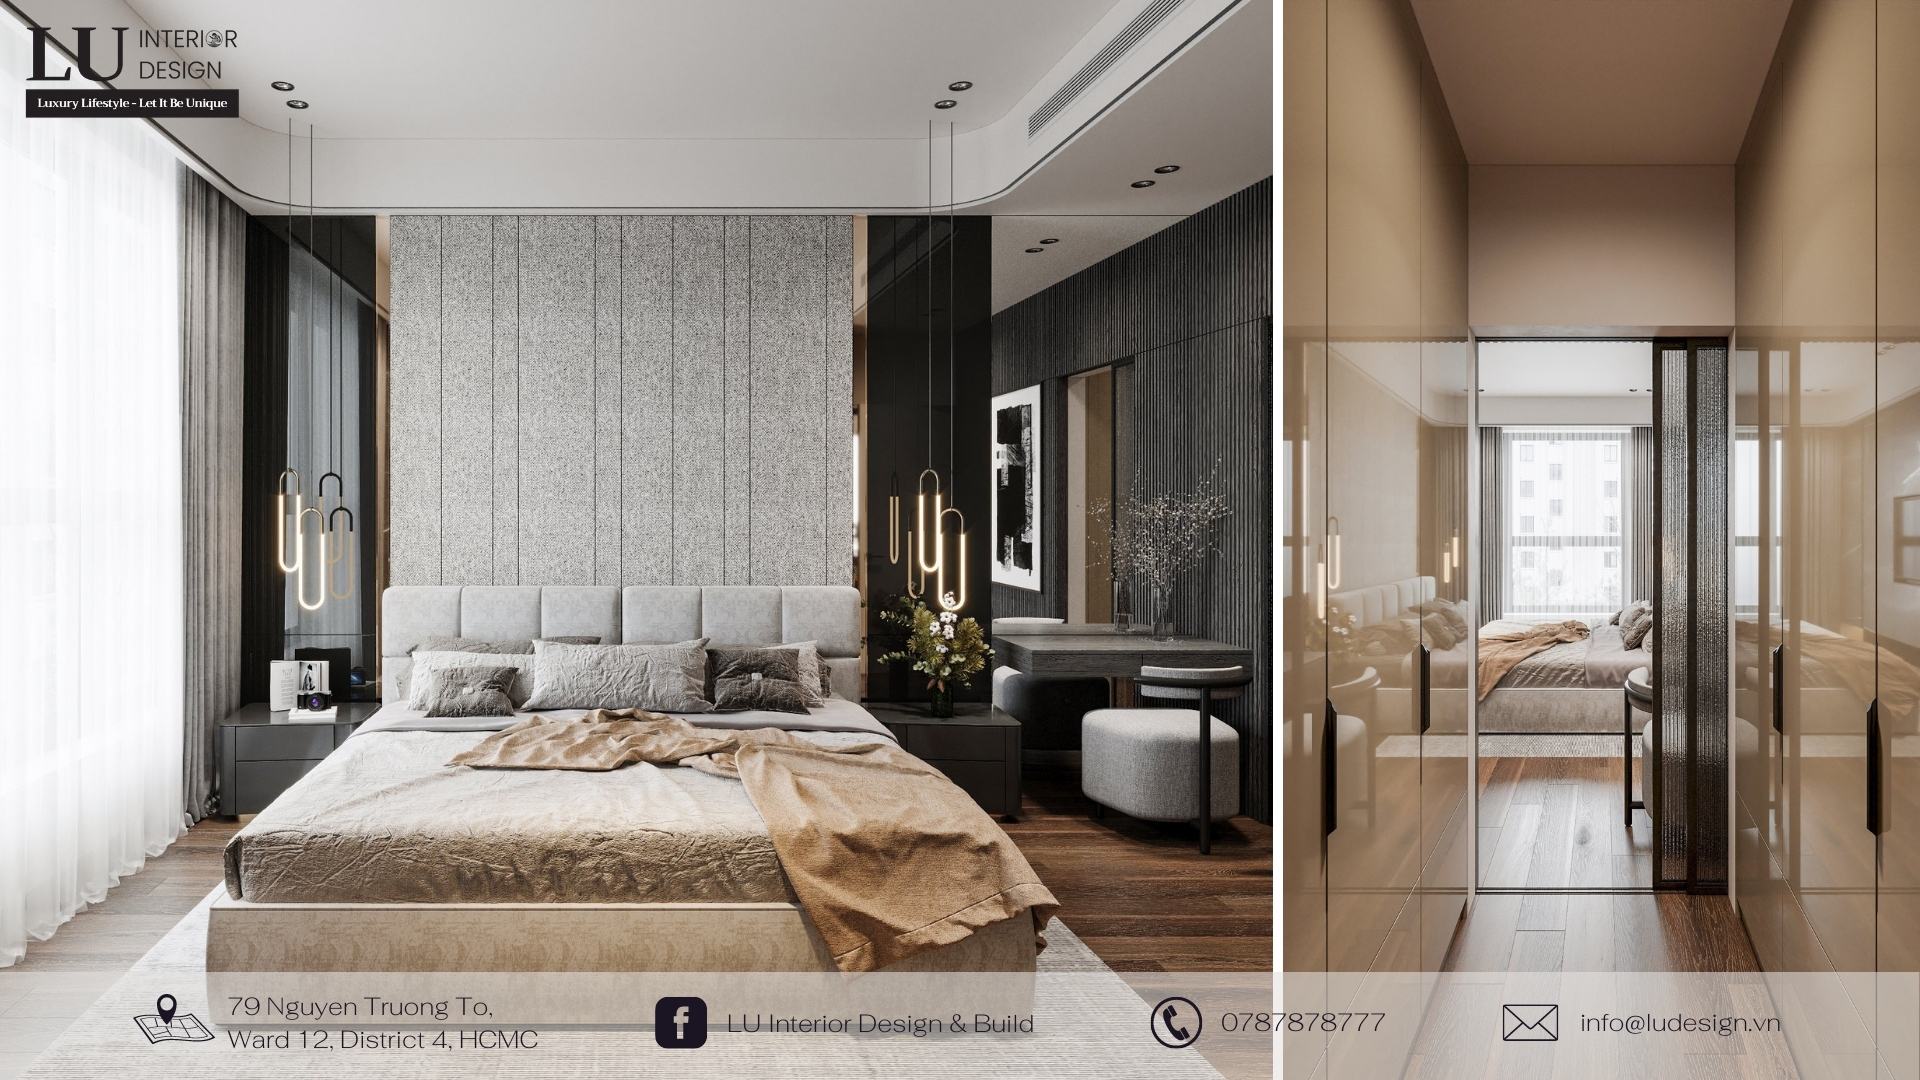 Gương - phụ kiện trang trí tối thượng cho không gian phòng ngủ | Dự án: căn hộ Mar Q - LU Design.